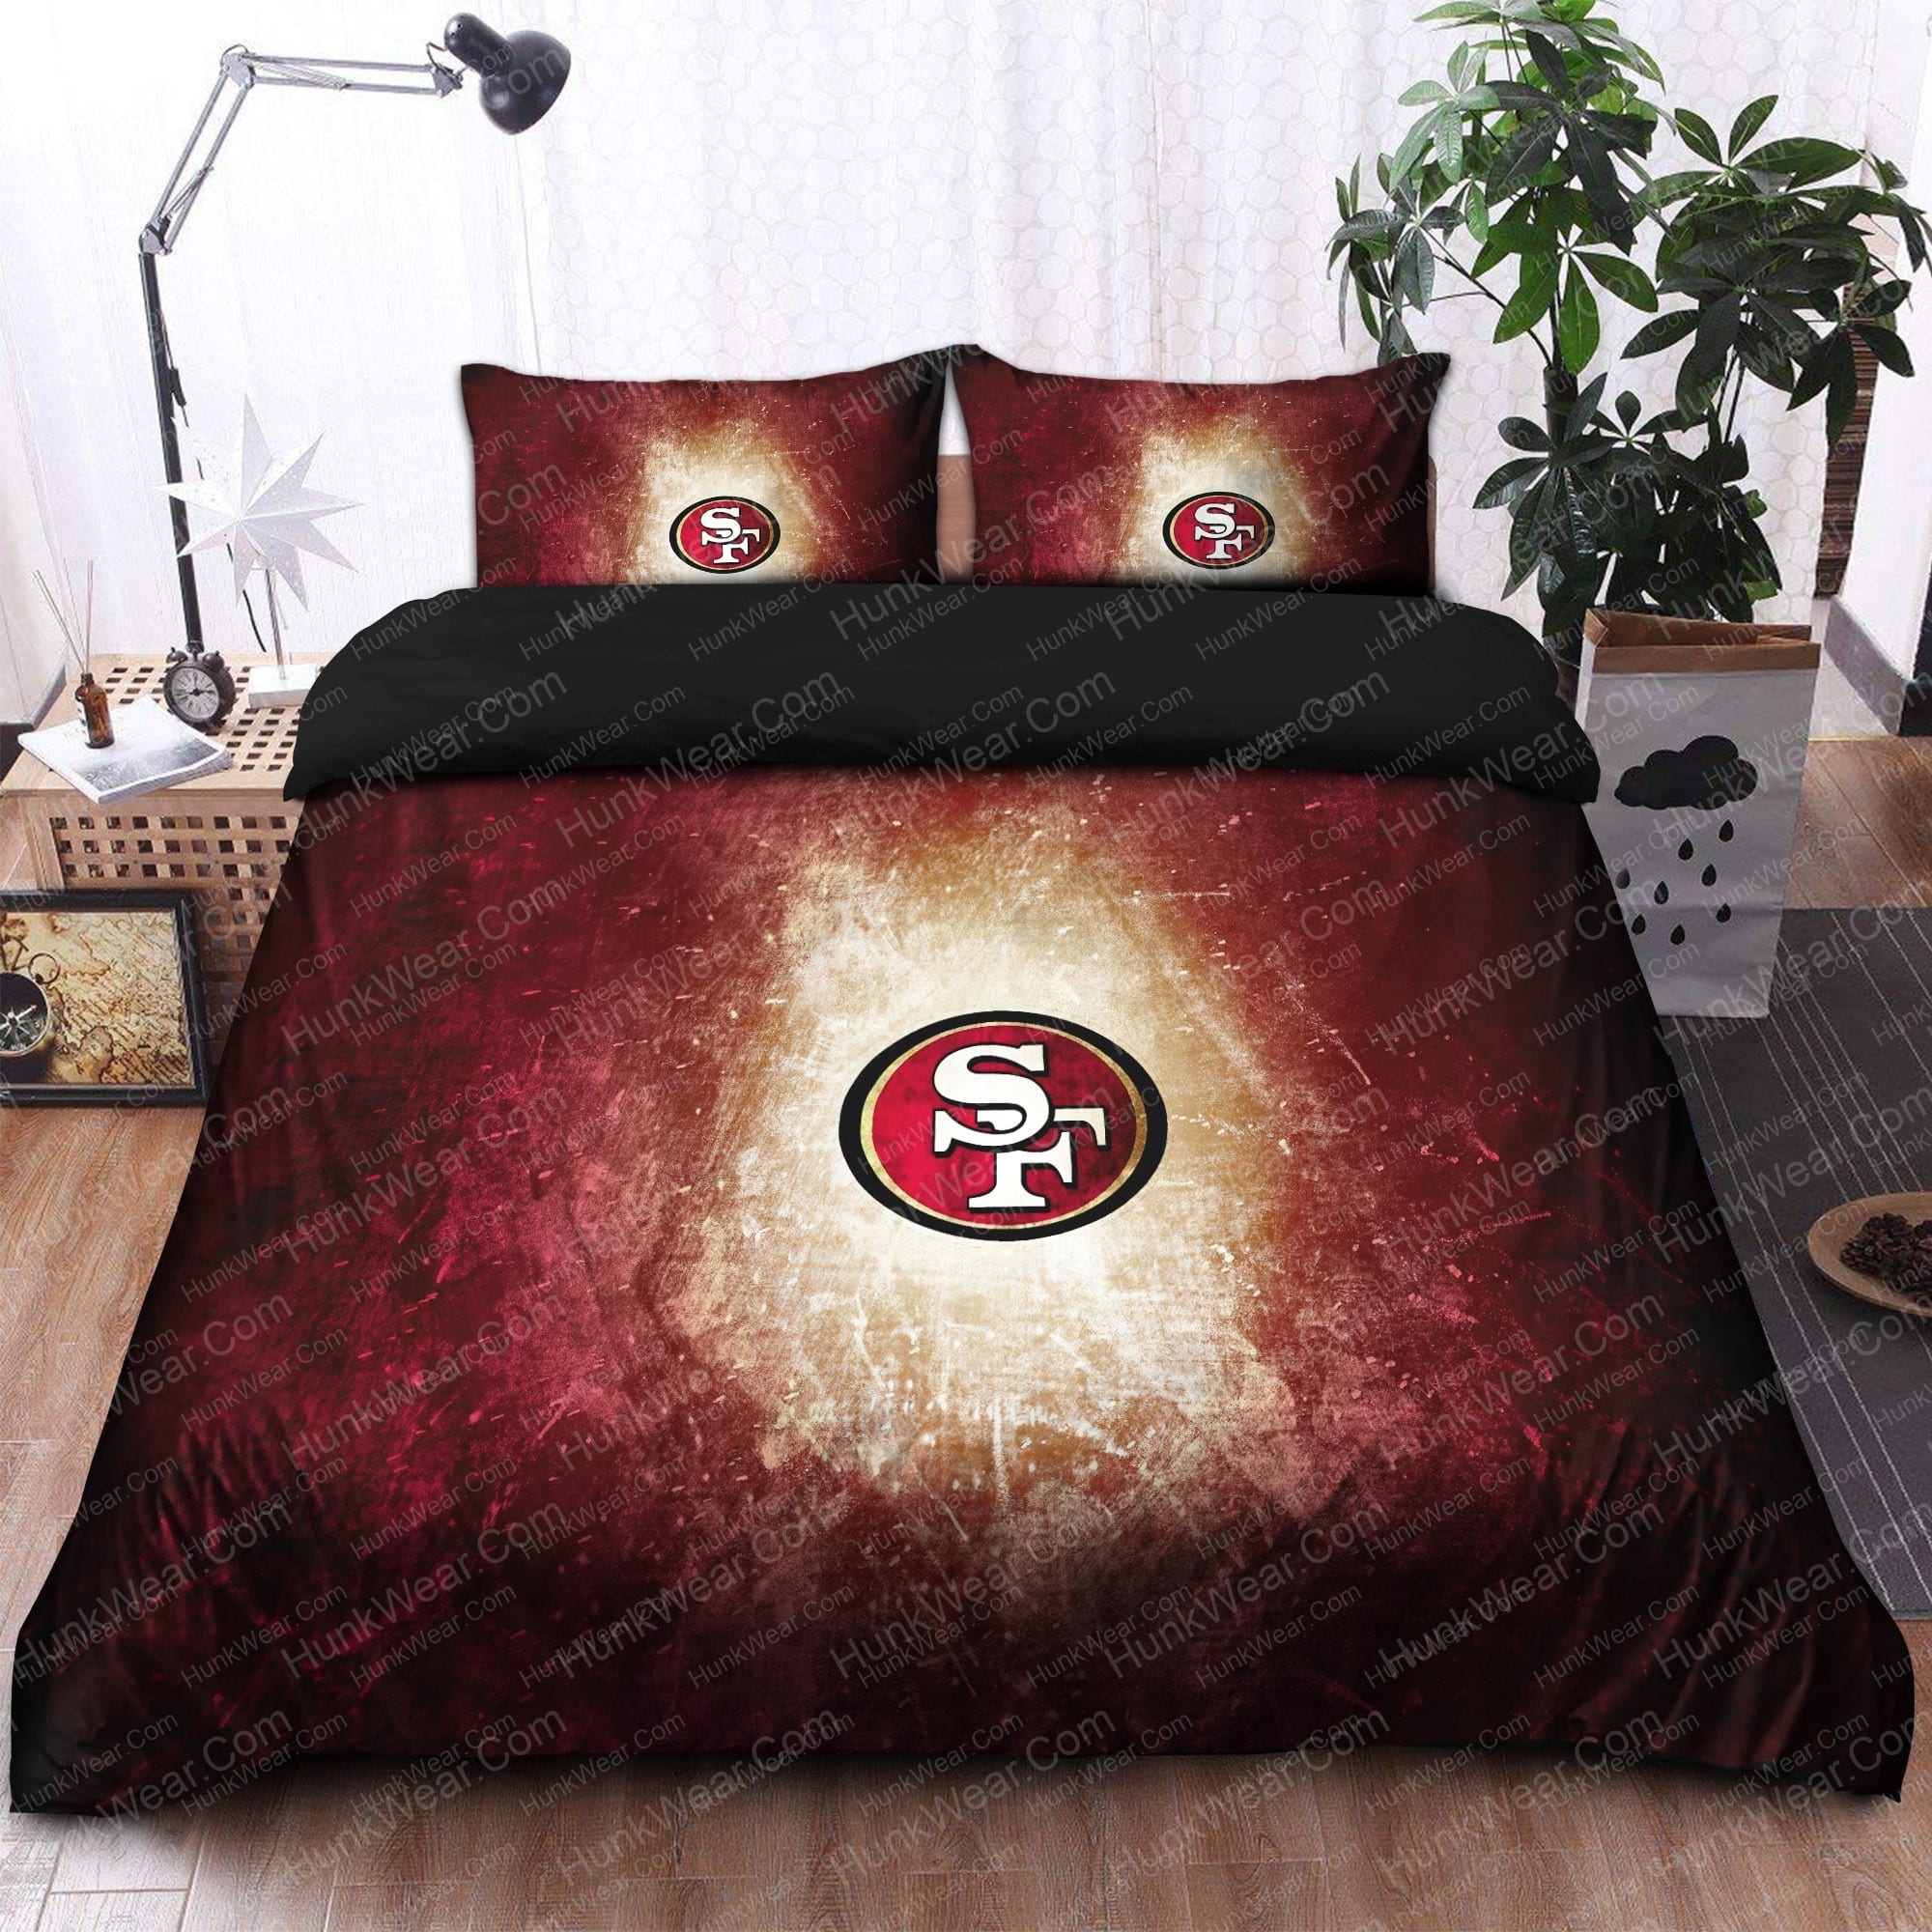 49ers wallpaper bed set bedding set 2